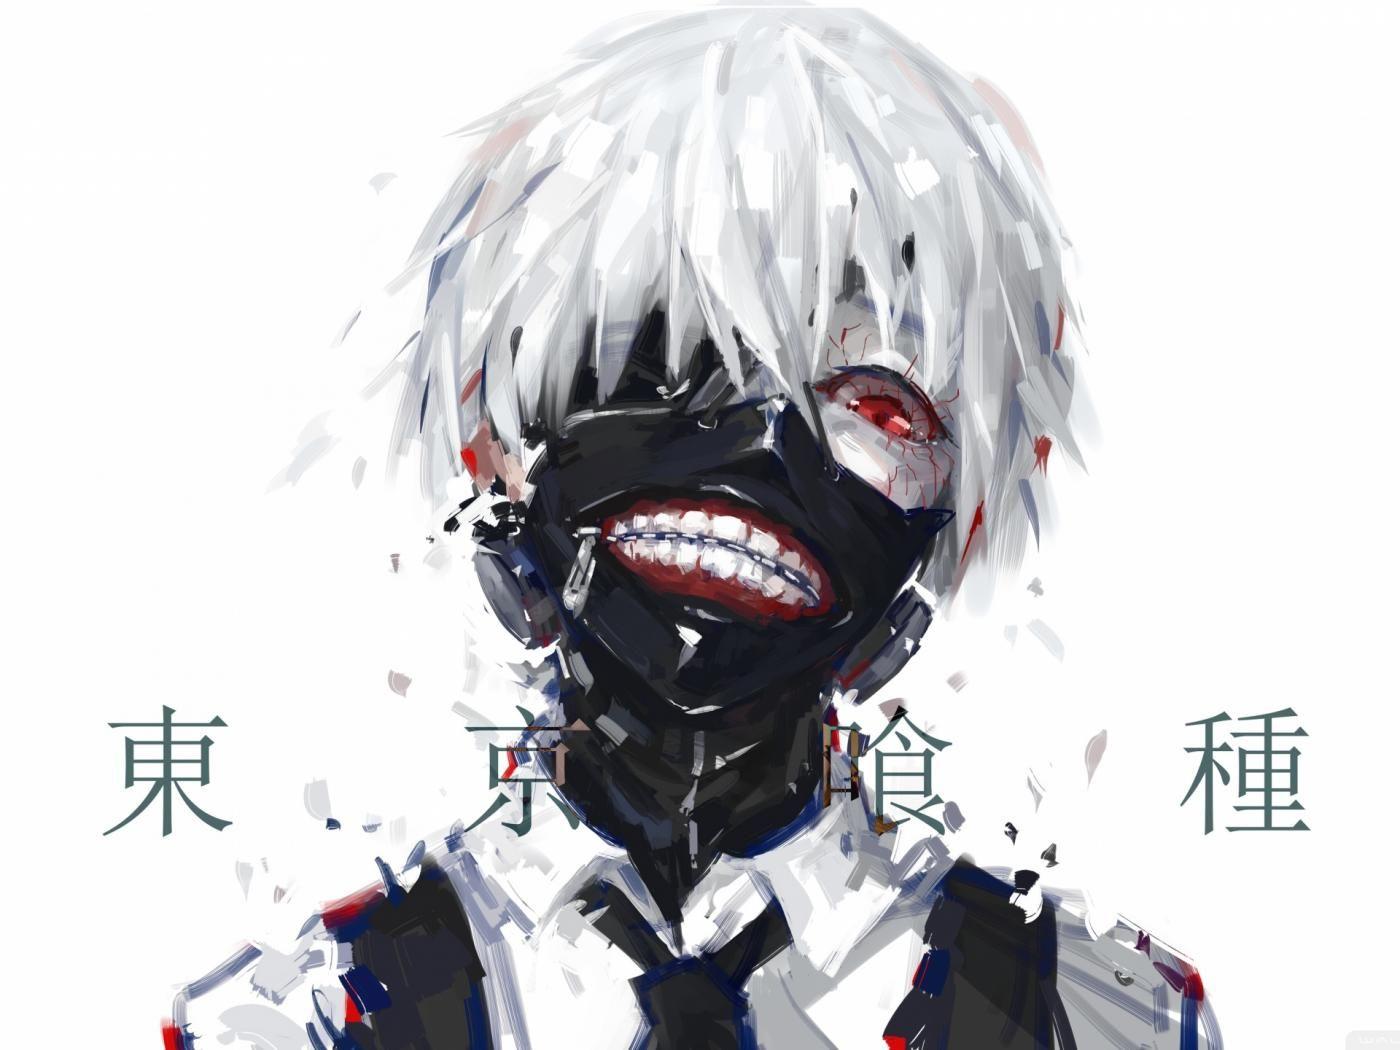 Ken Kaneki Mask Tokyo Ghoul 4K Wallpaper #6.2581